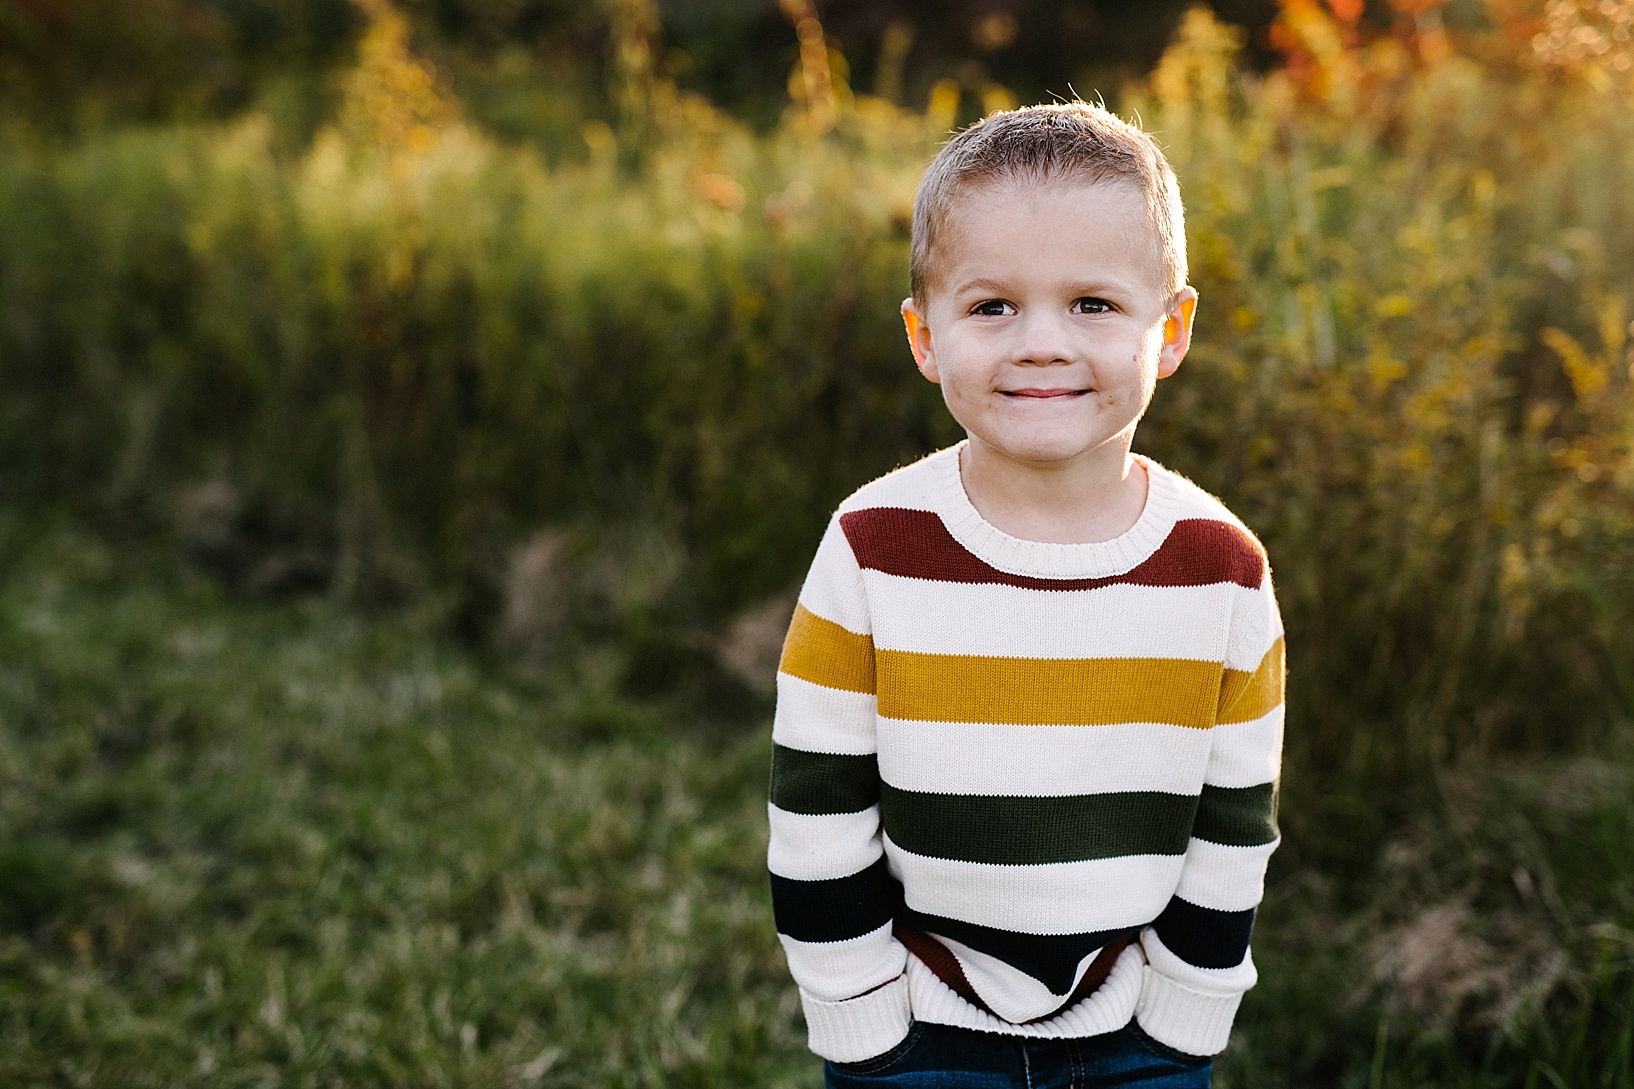 little boy in striped sweater standing in field smiling